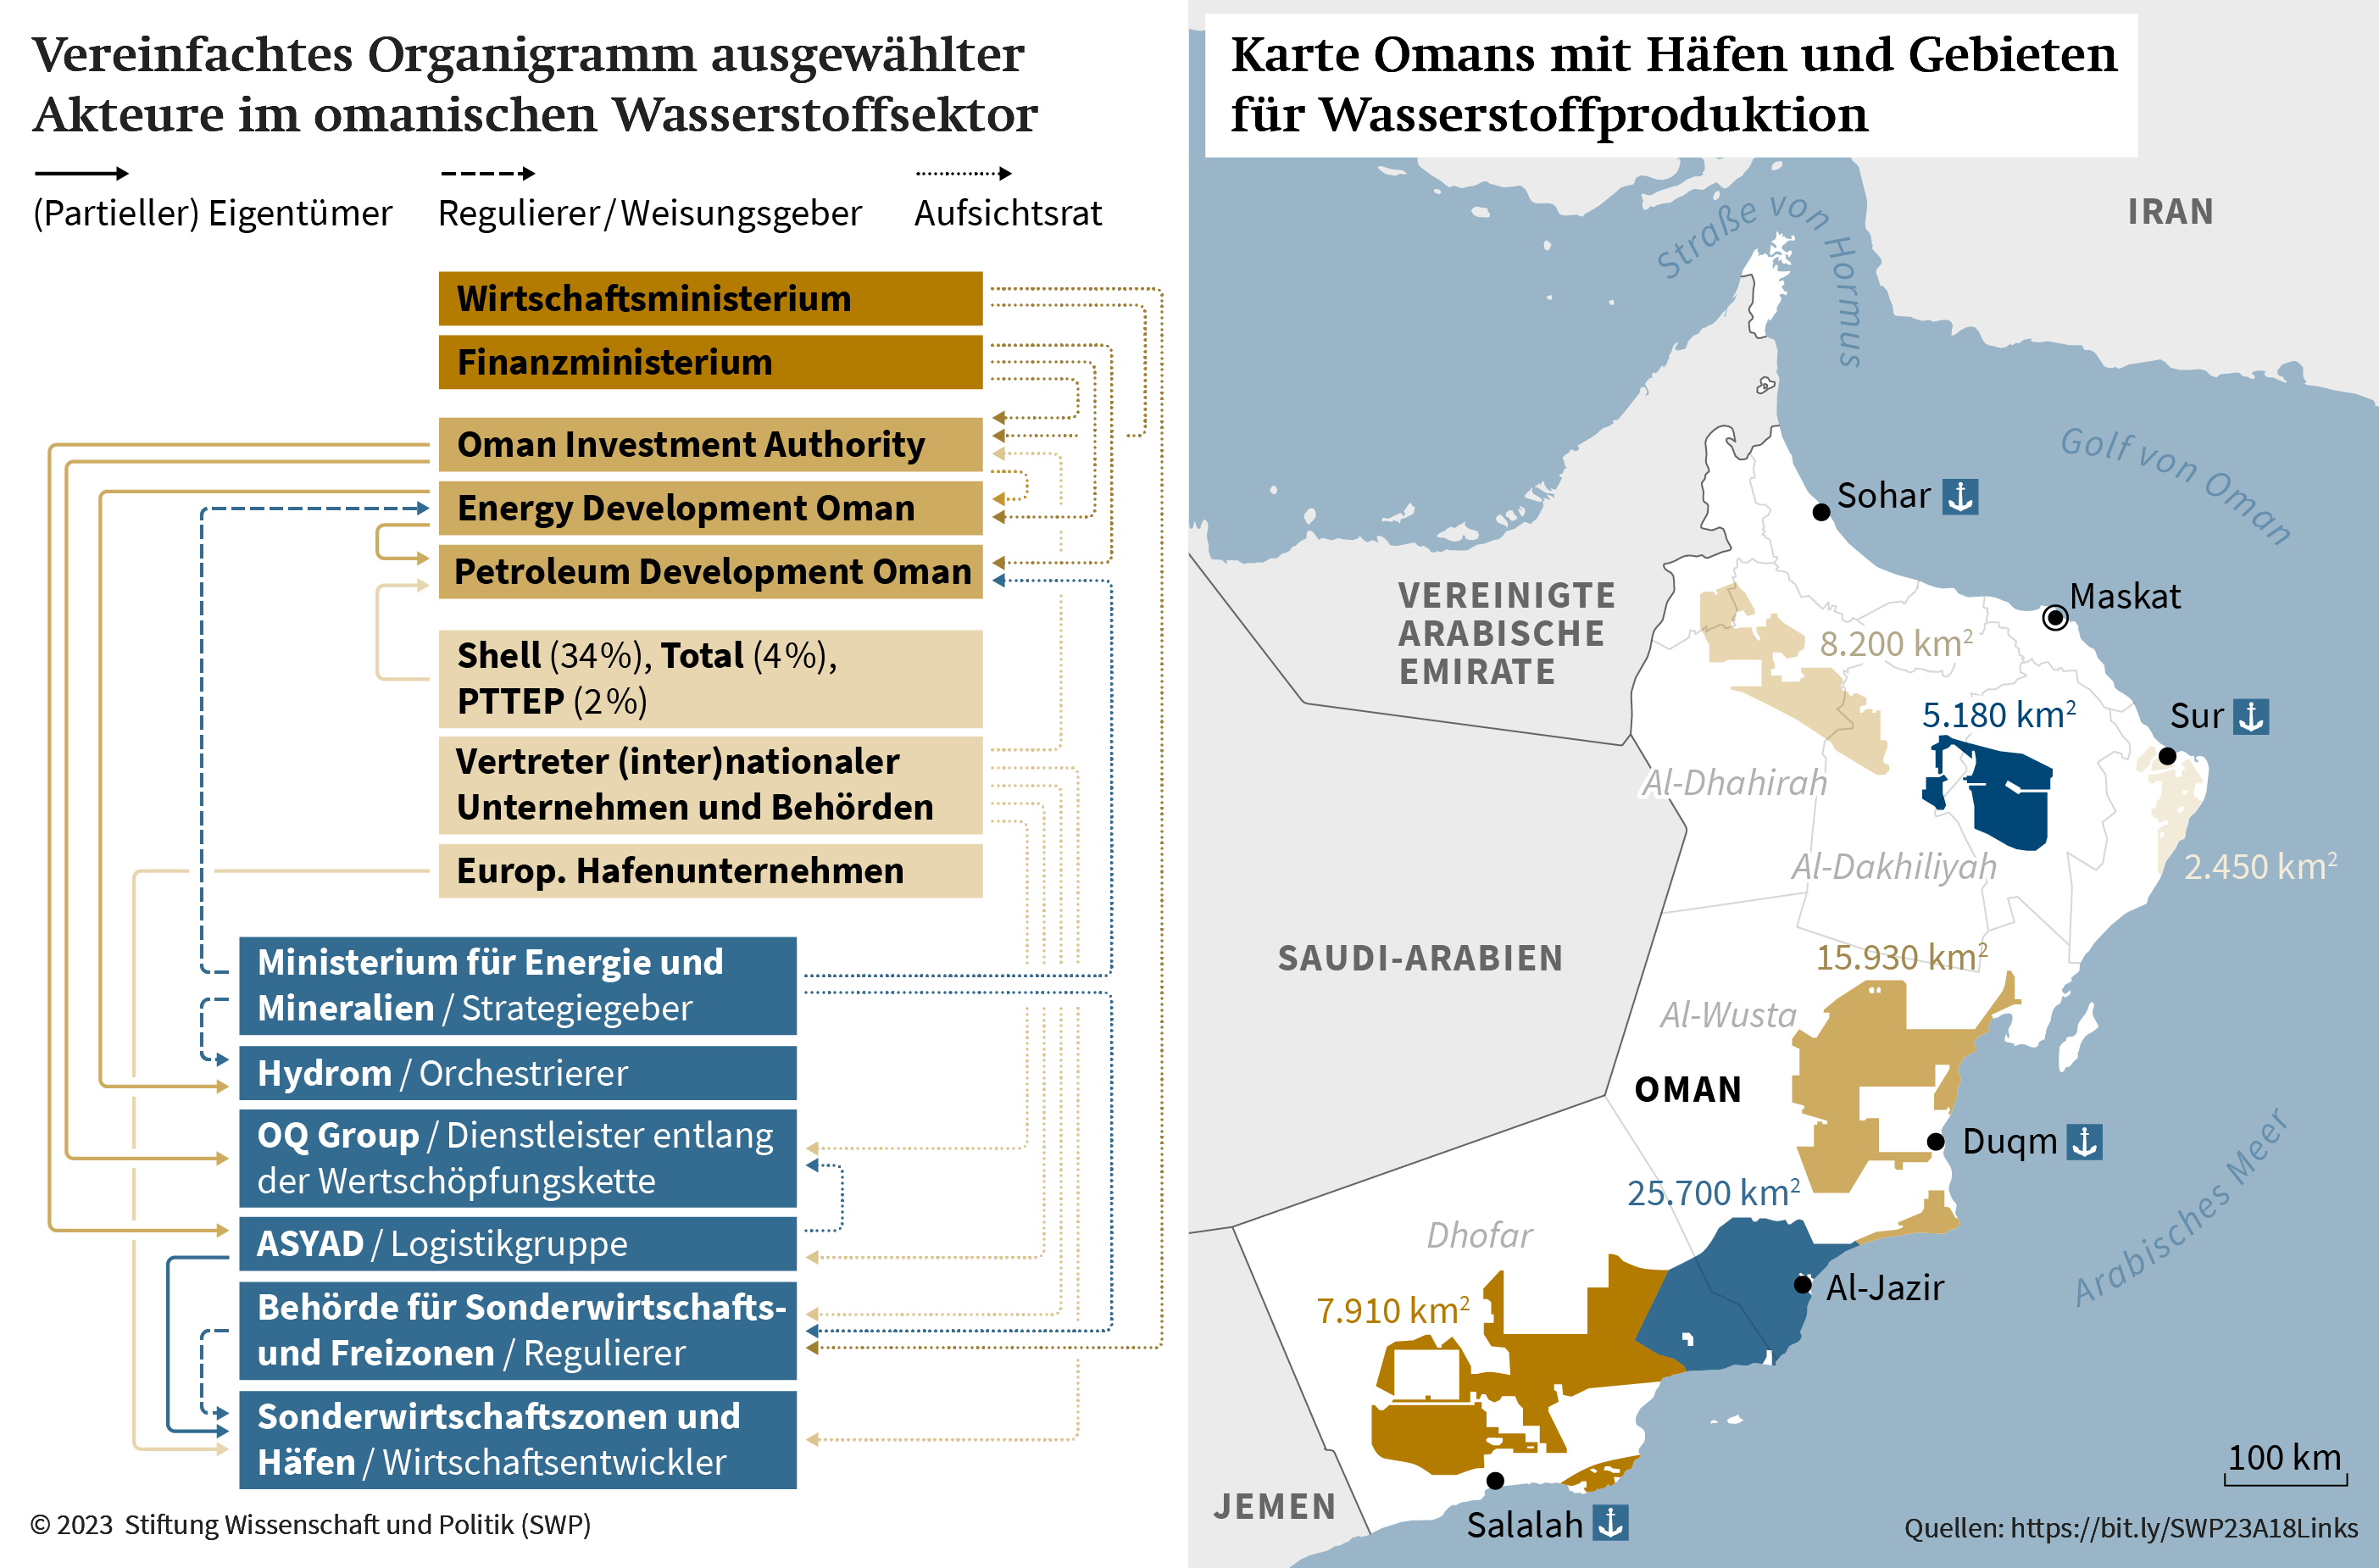 Vereinfachtes Organigramm Wasserstoffsektor und Karte Omans